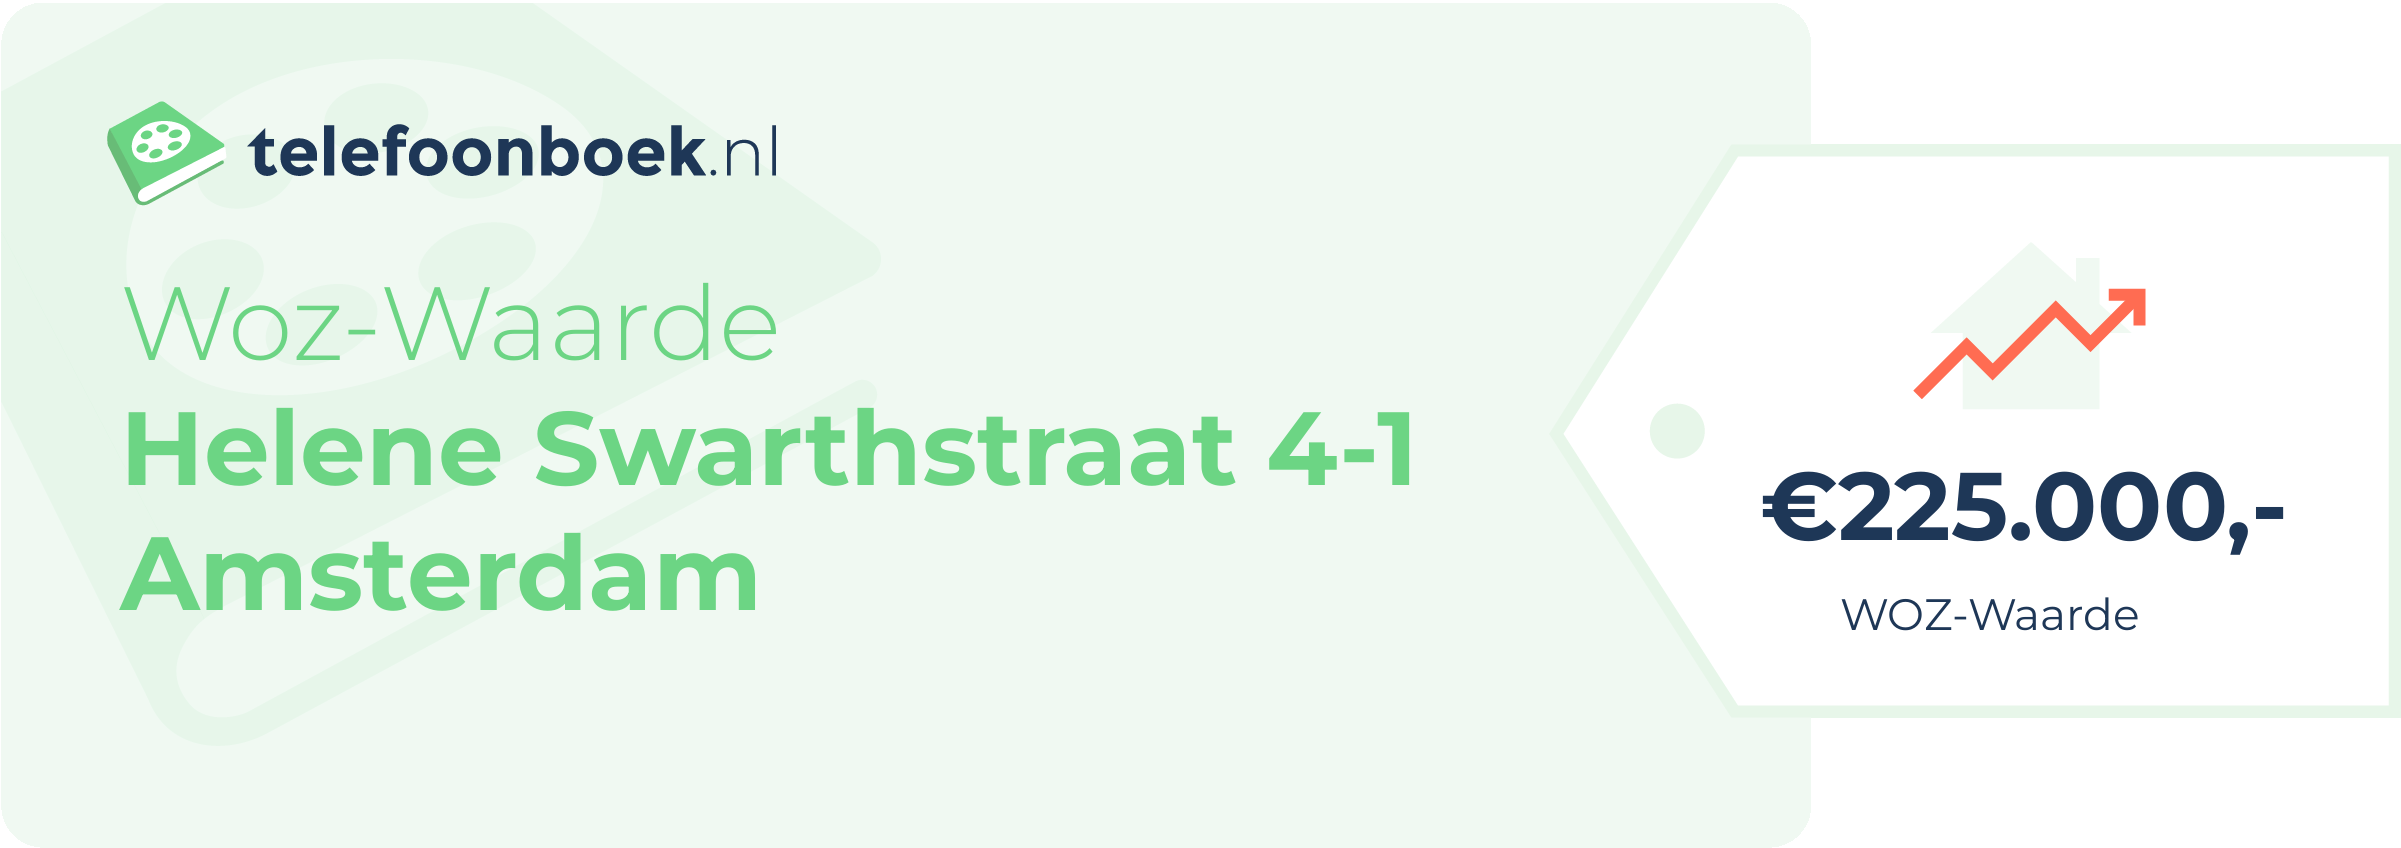 WOZ-waarde Helene Swarthstraat 4-1 Amsterdam